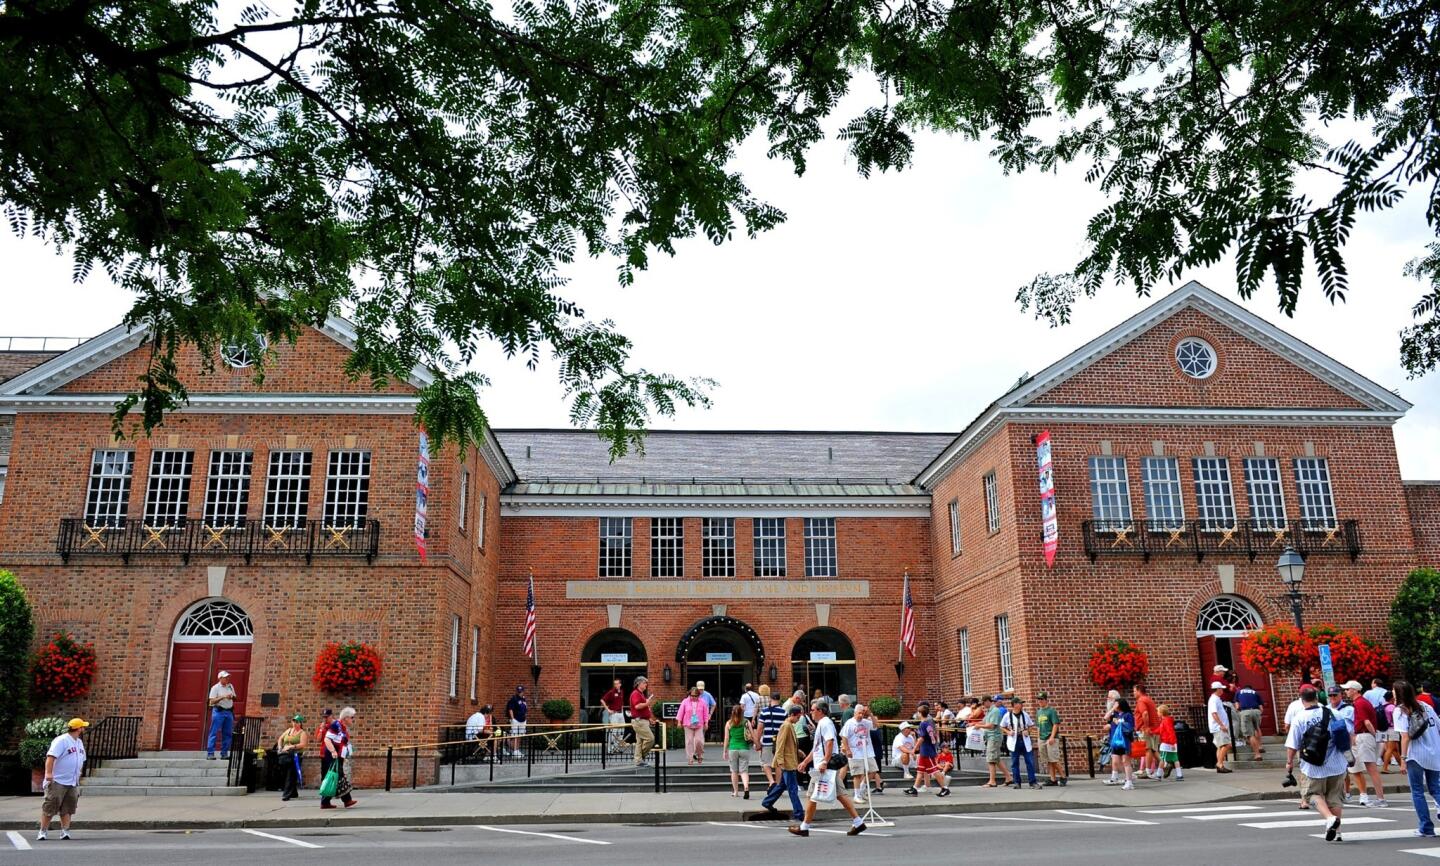 National Baseball Hall of Fame and Museum